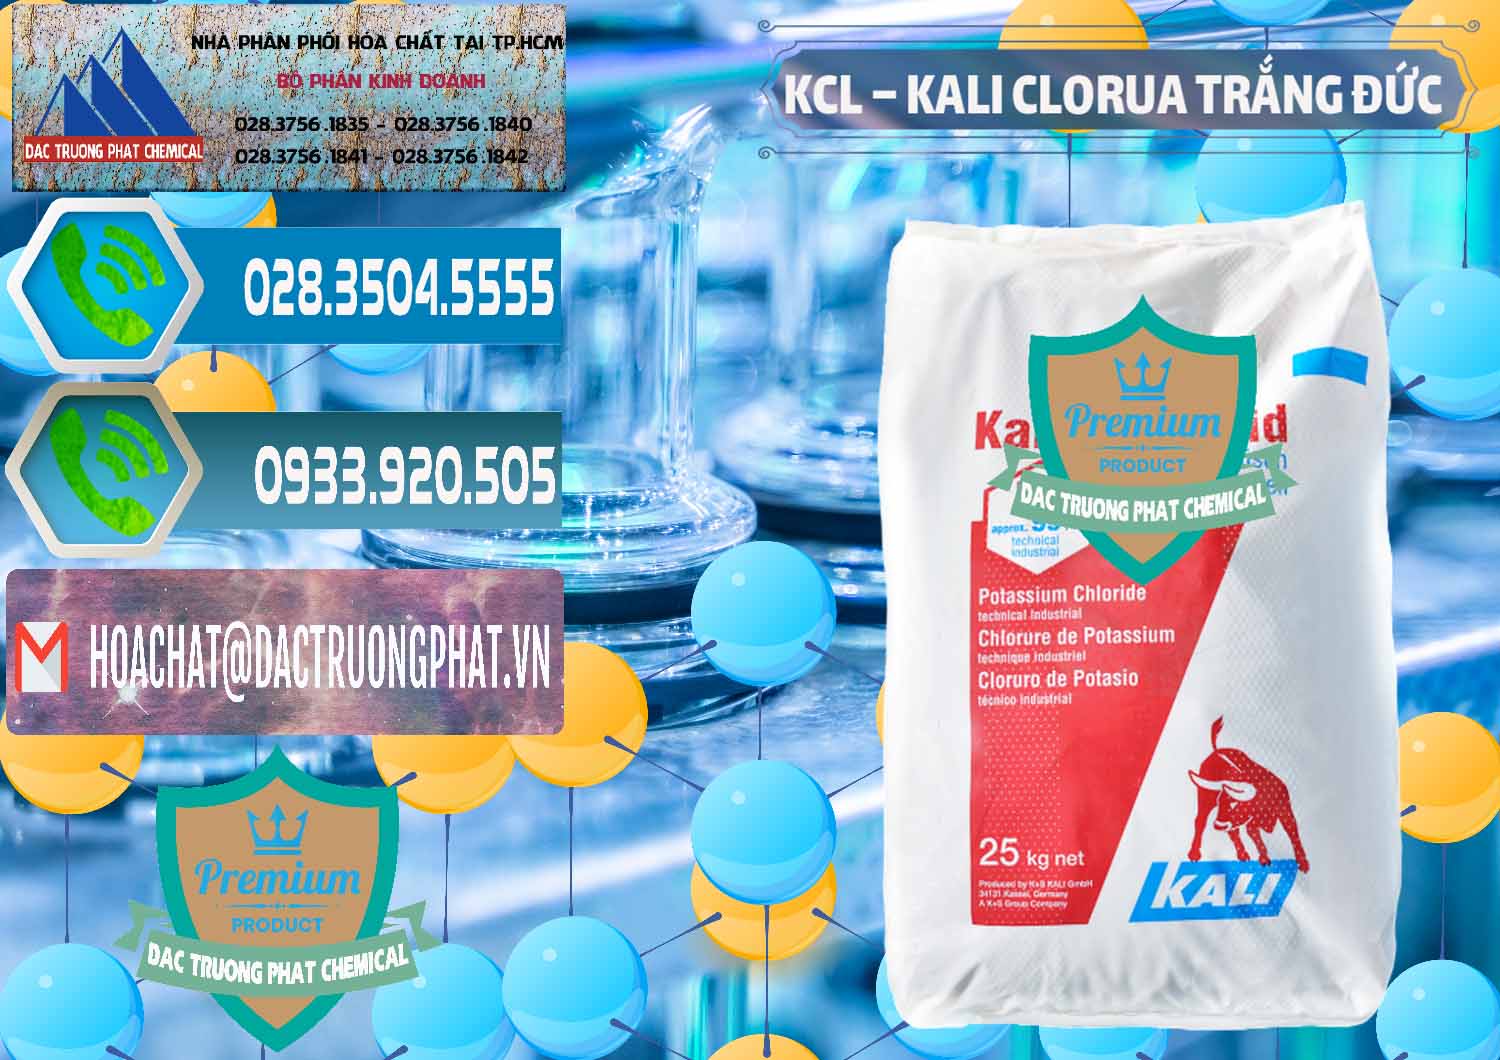 Bán và cung ứng KCL – Kali Clorua Trắng Đức Germany - 0086 - Cty cung cấp & phân phối hóa chất tại TP.HCM - congtyhoachat.net